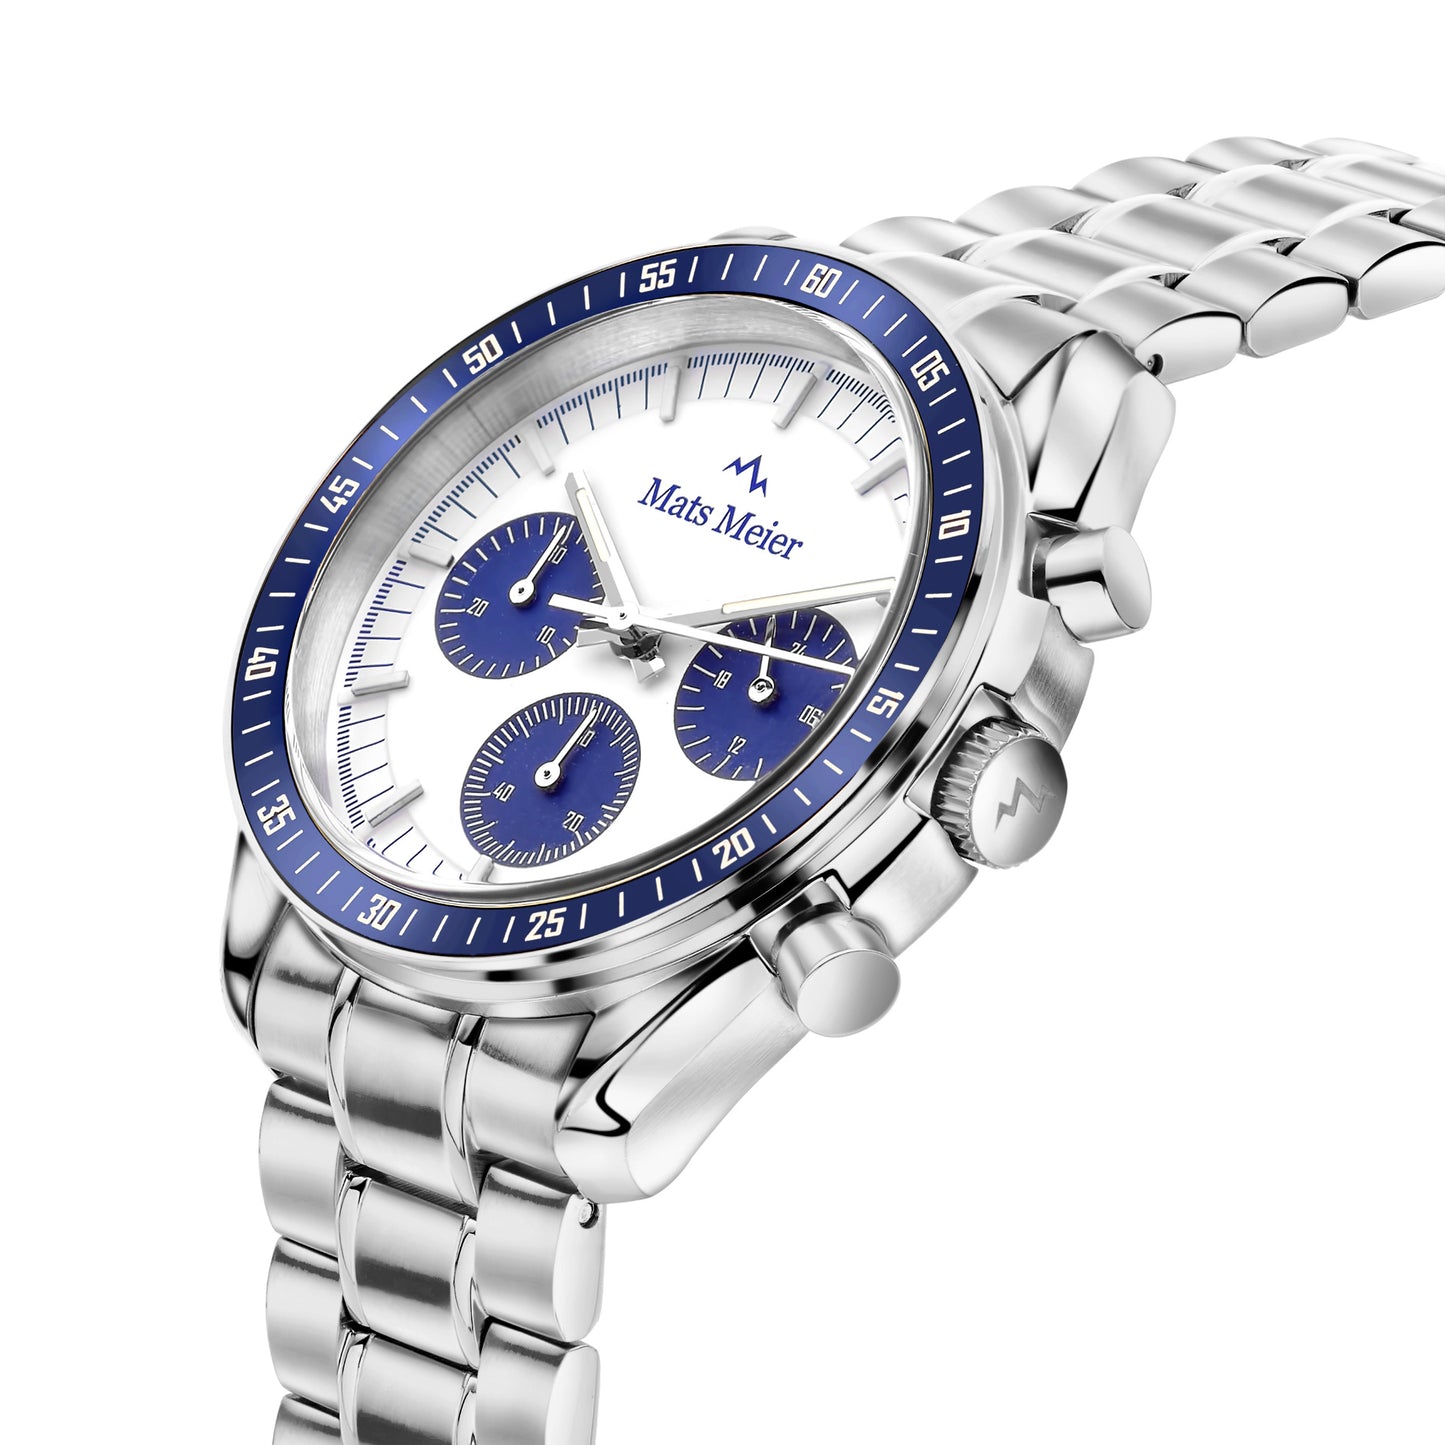 Arosa Racing chronographe montre pour homme couleur argent et blanc